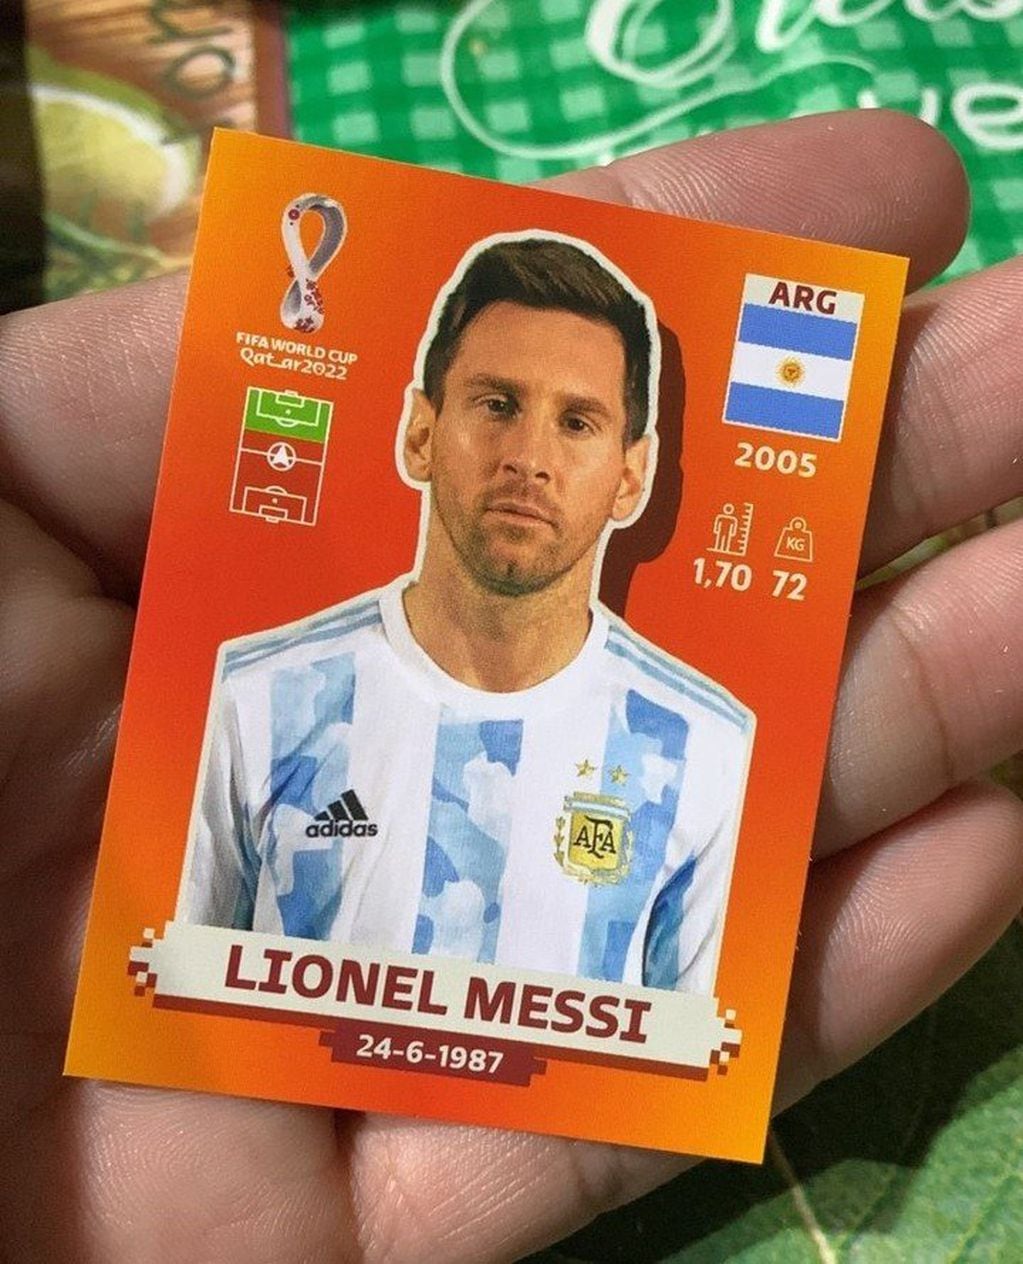 La figurita de Lionel Messi le tocó en el tercer paquetito que compró.